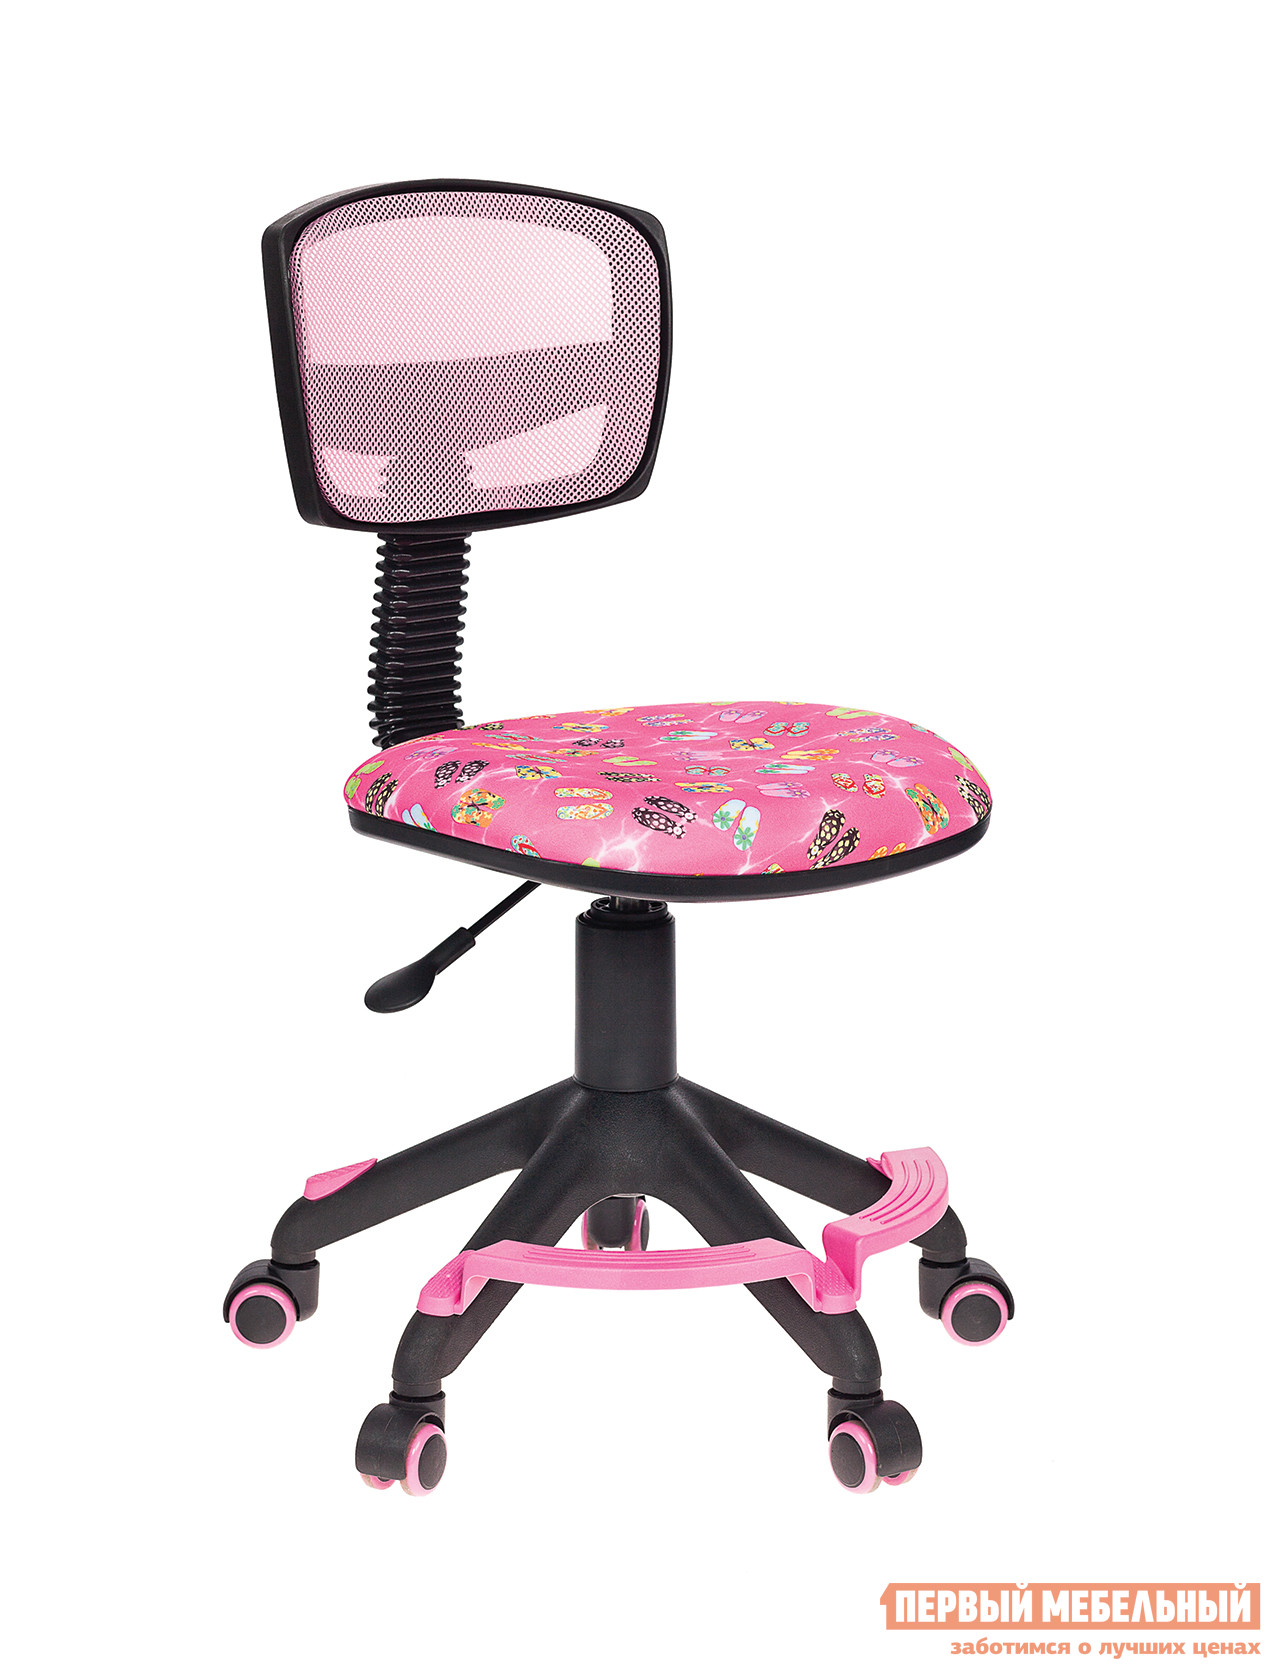 Детское компьютерное кресло  CH-299-F Розовый сланцы FlipFlop_P от Первый Мебельный